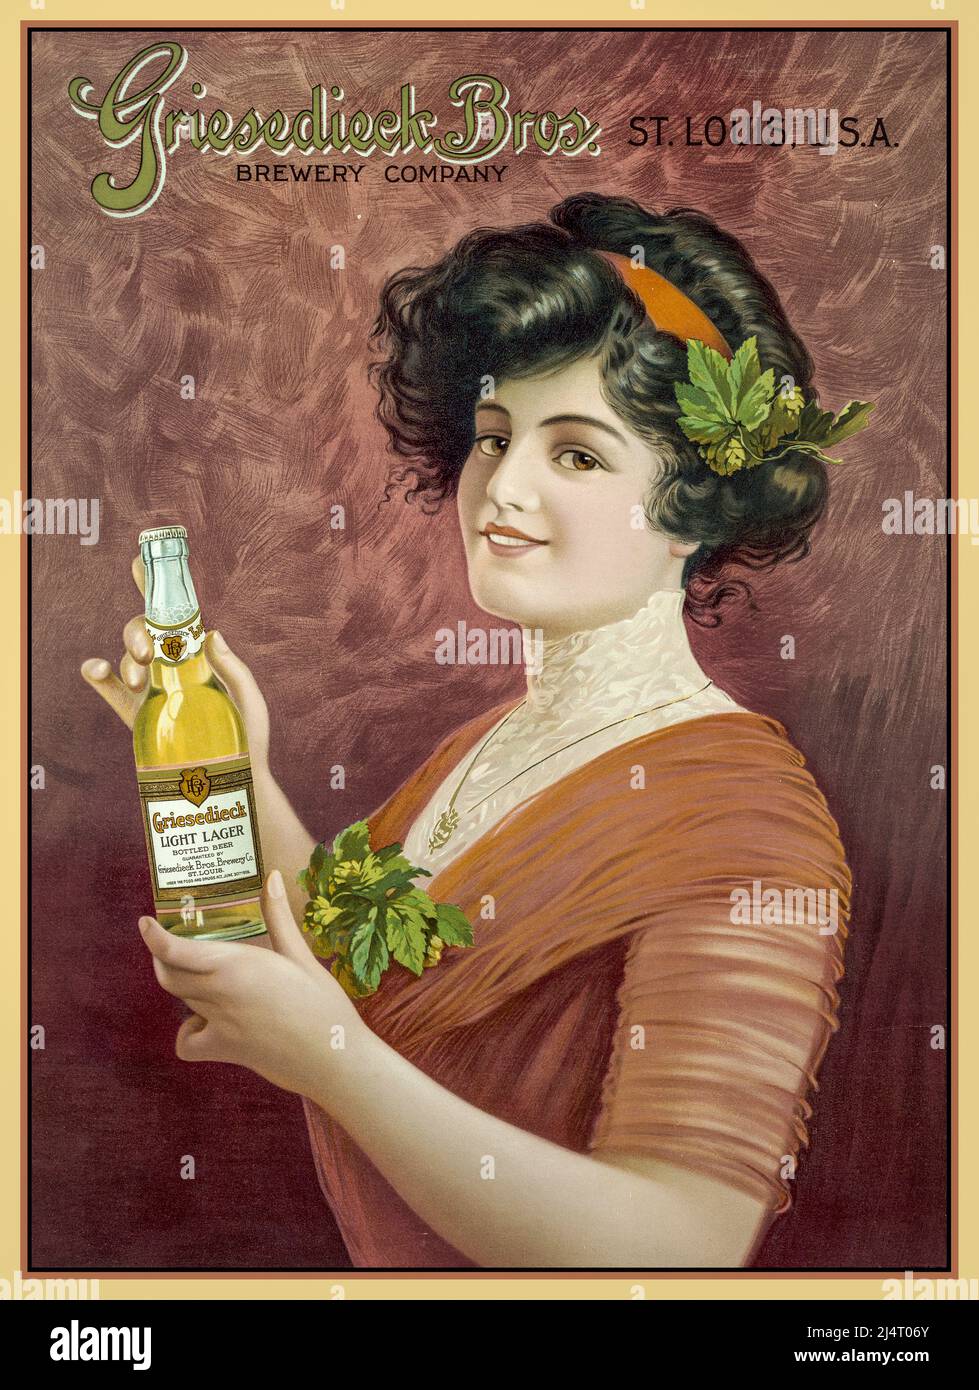 Cartel de Publicidad de Cerveza Vintage para Griesedieck Bros. Brewing Company, St. Louis, EE.UU. Una chica Gibson sostiene una botella de cerveza Griesedieck Light Lager. Litografía en color, Botella fechada en 1909. Foto de stock